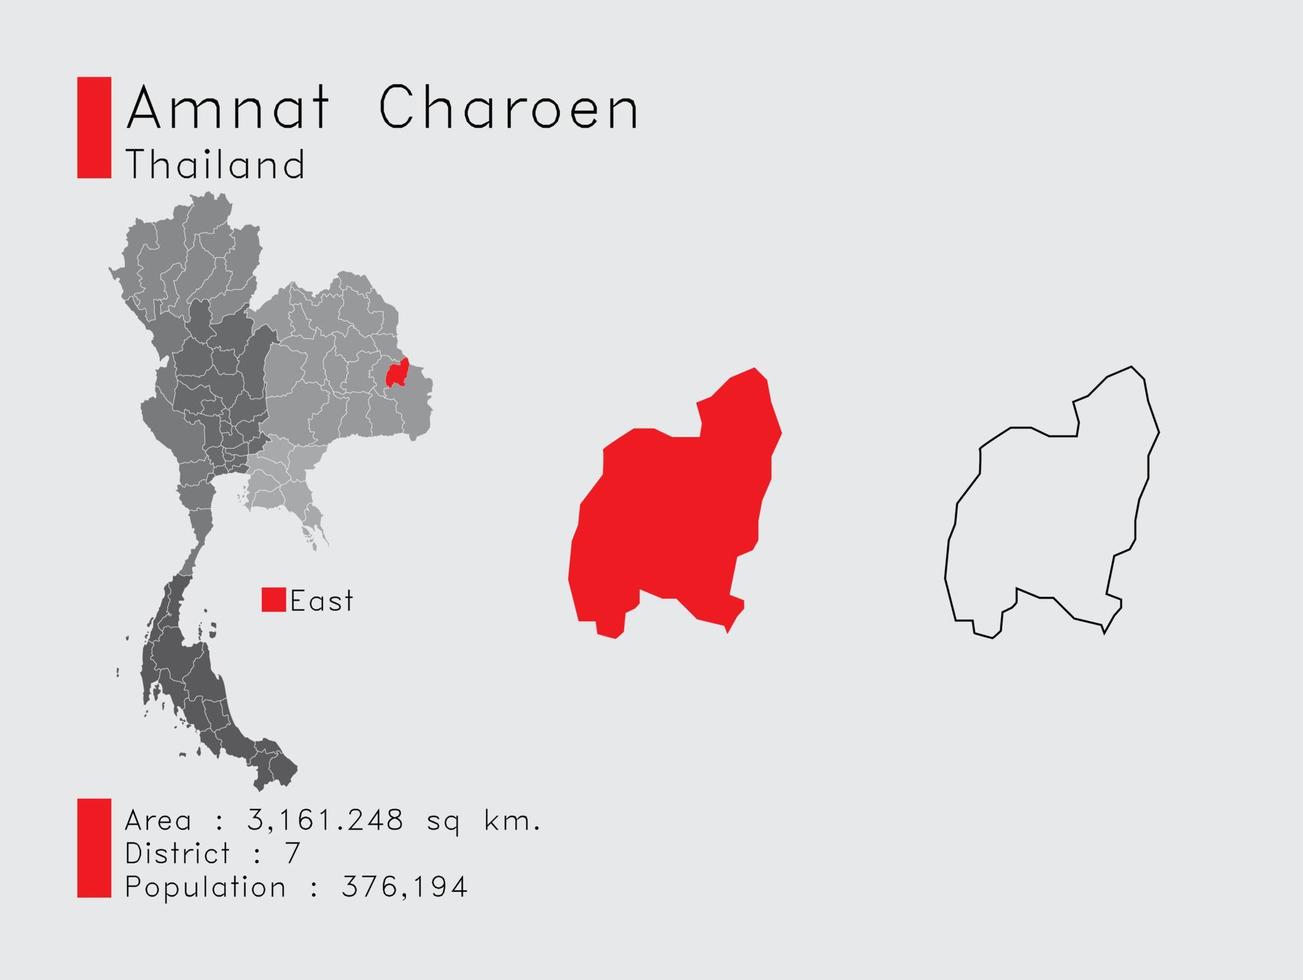 amnat charoen position in thailand eine reihe von infografikelementen für die provinz. und Bereich Bezirk Bevölkerung und Gliederung. Vektor mit grauem Hintergrund.